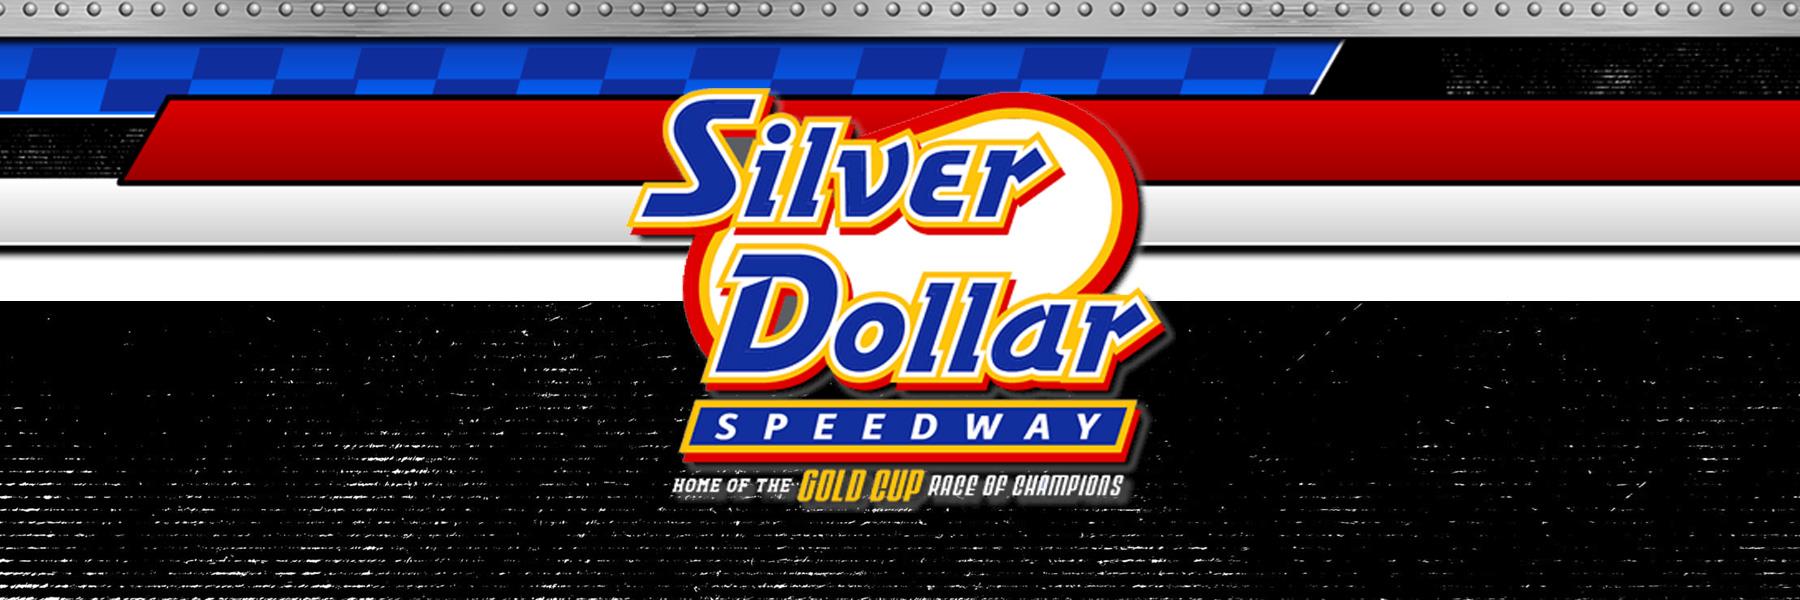 9/8/2022 - Silver Dollar Speedway